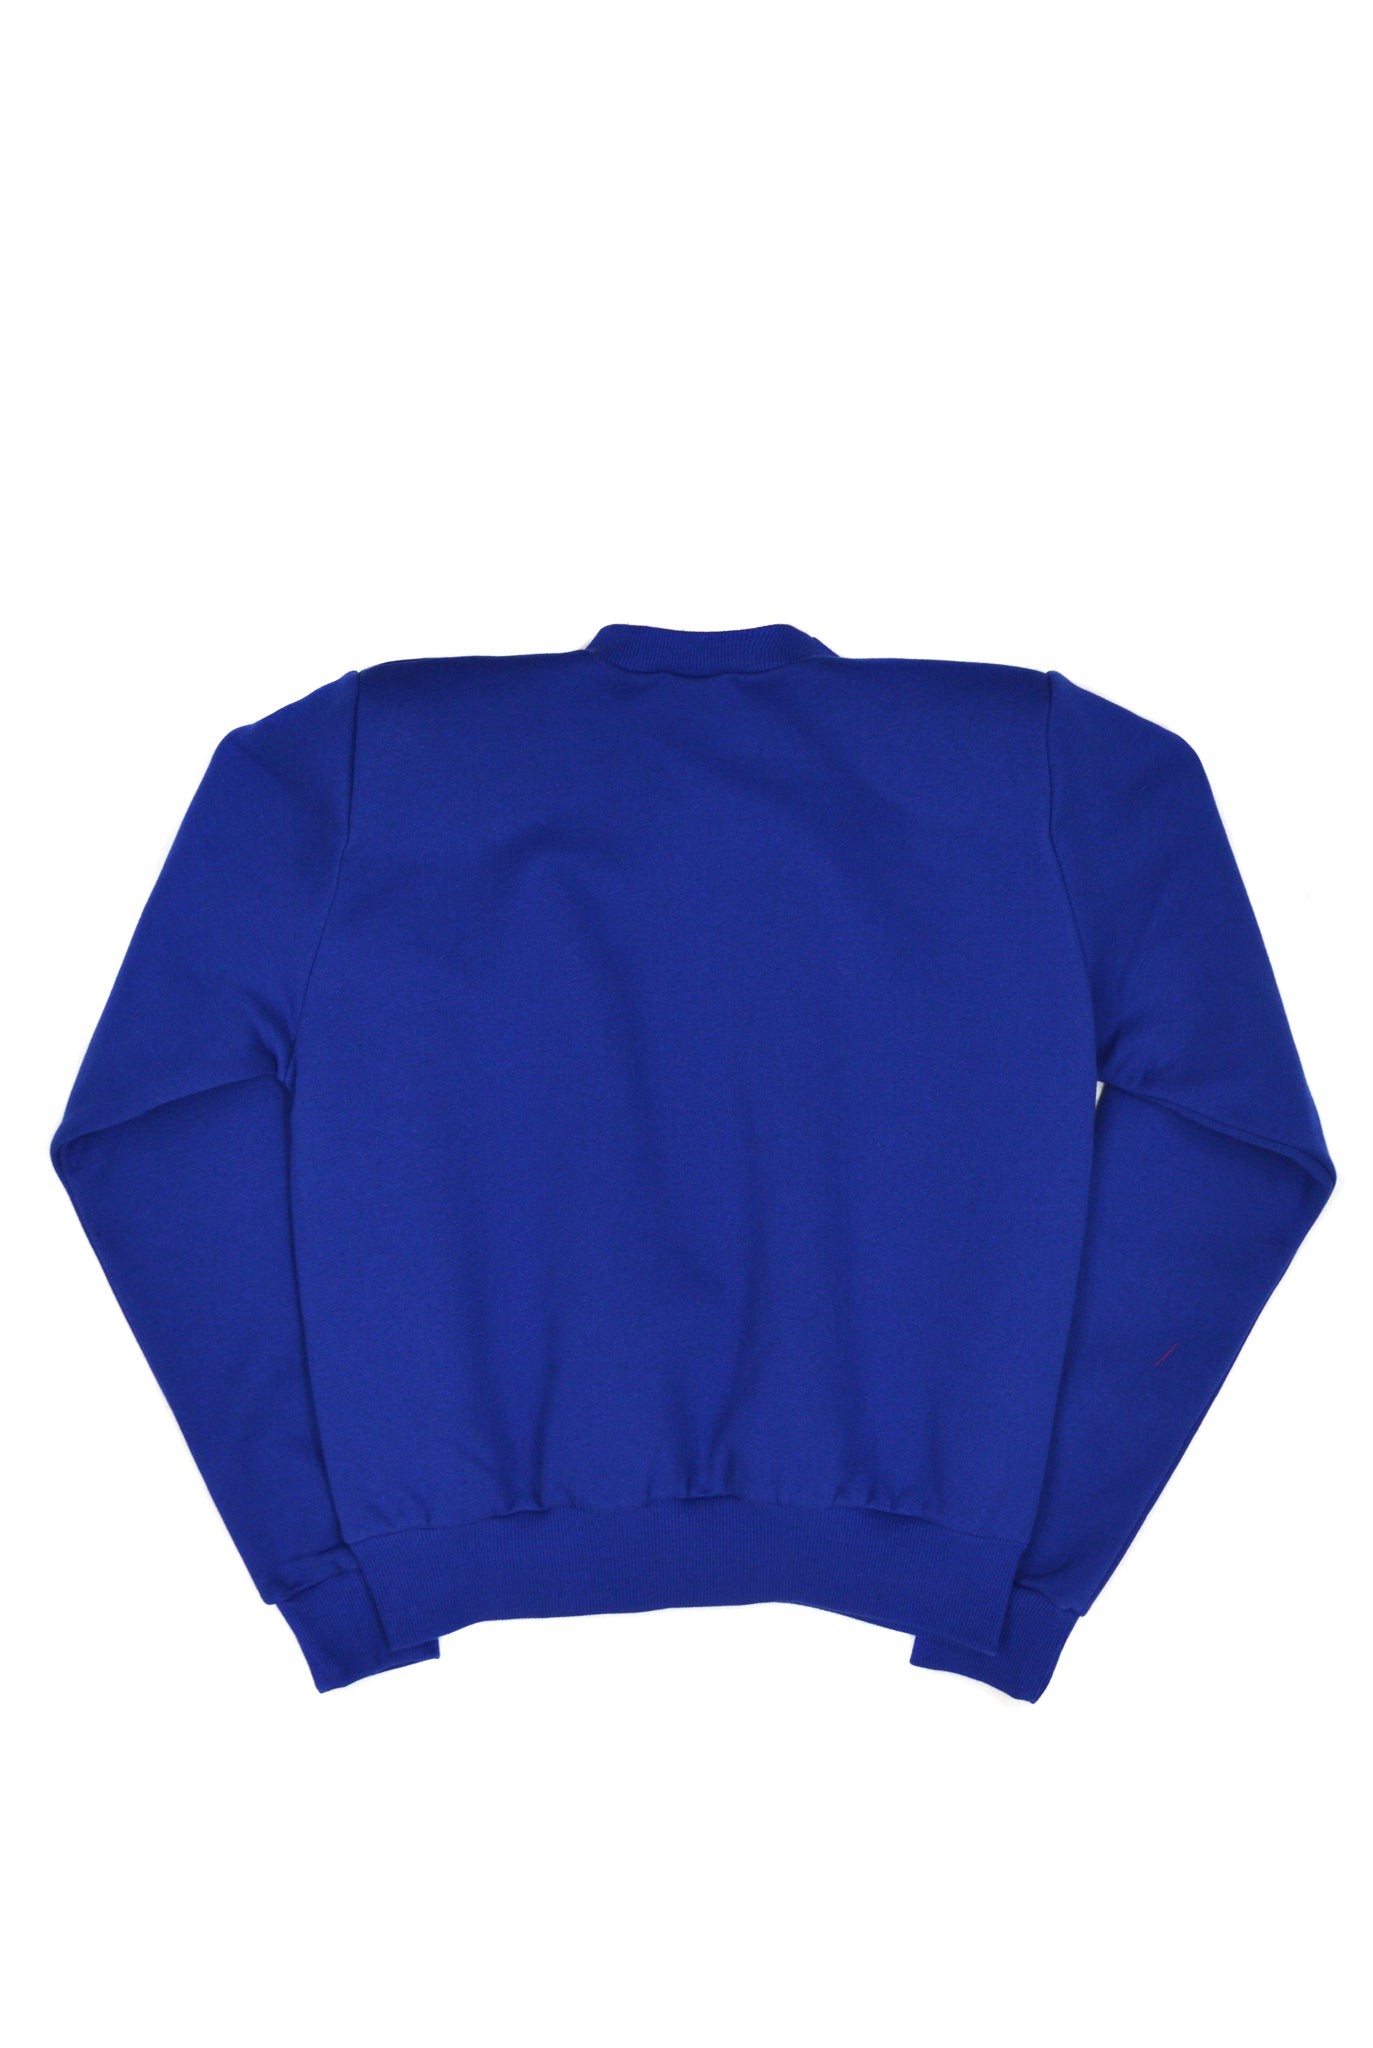 SOOP SOOP Shoulder Pad Sweatshirt, Cobalt